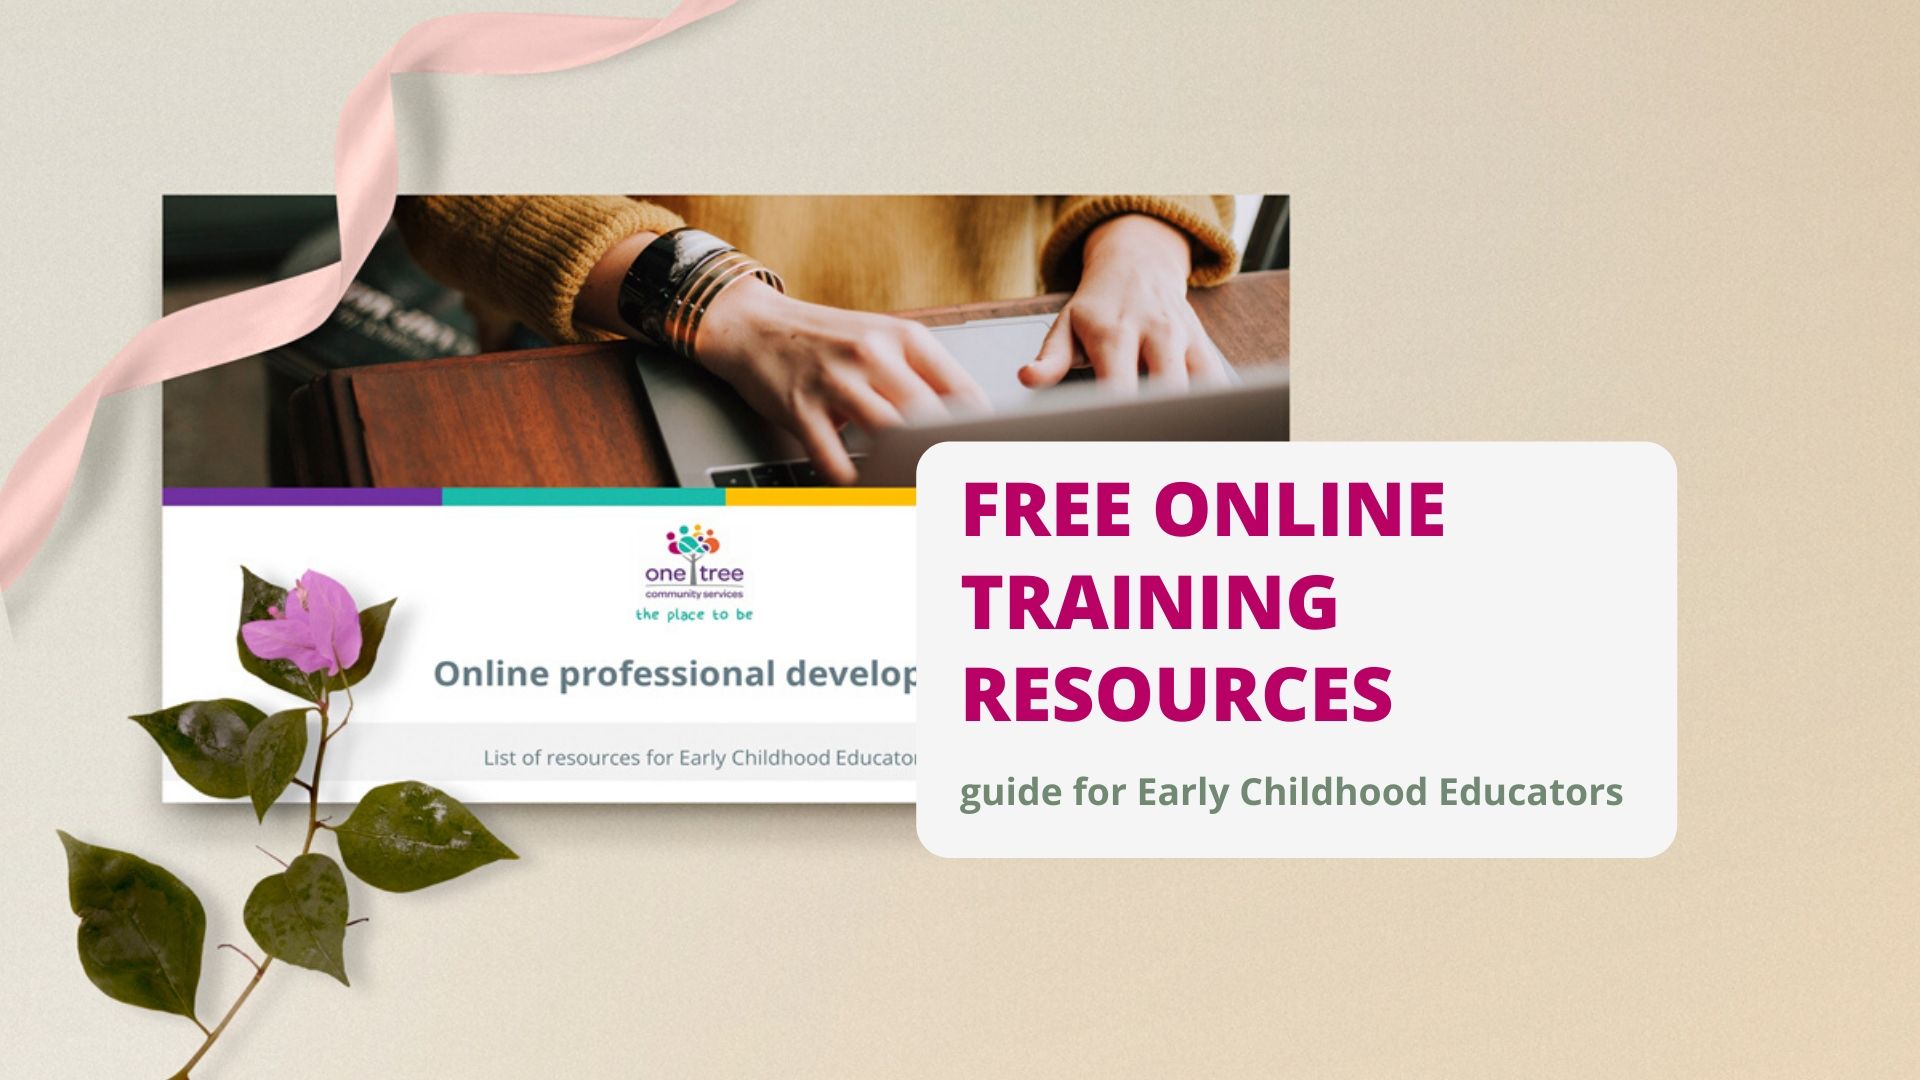 Online professional development courses for educators